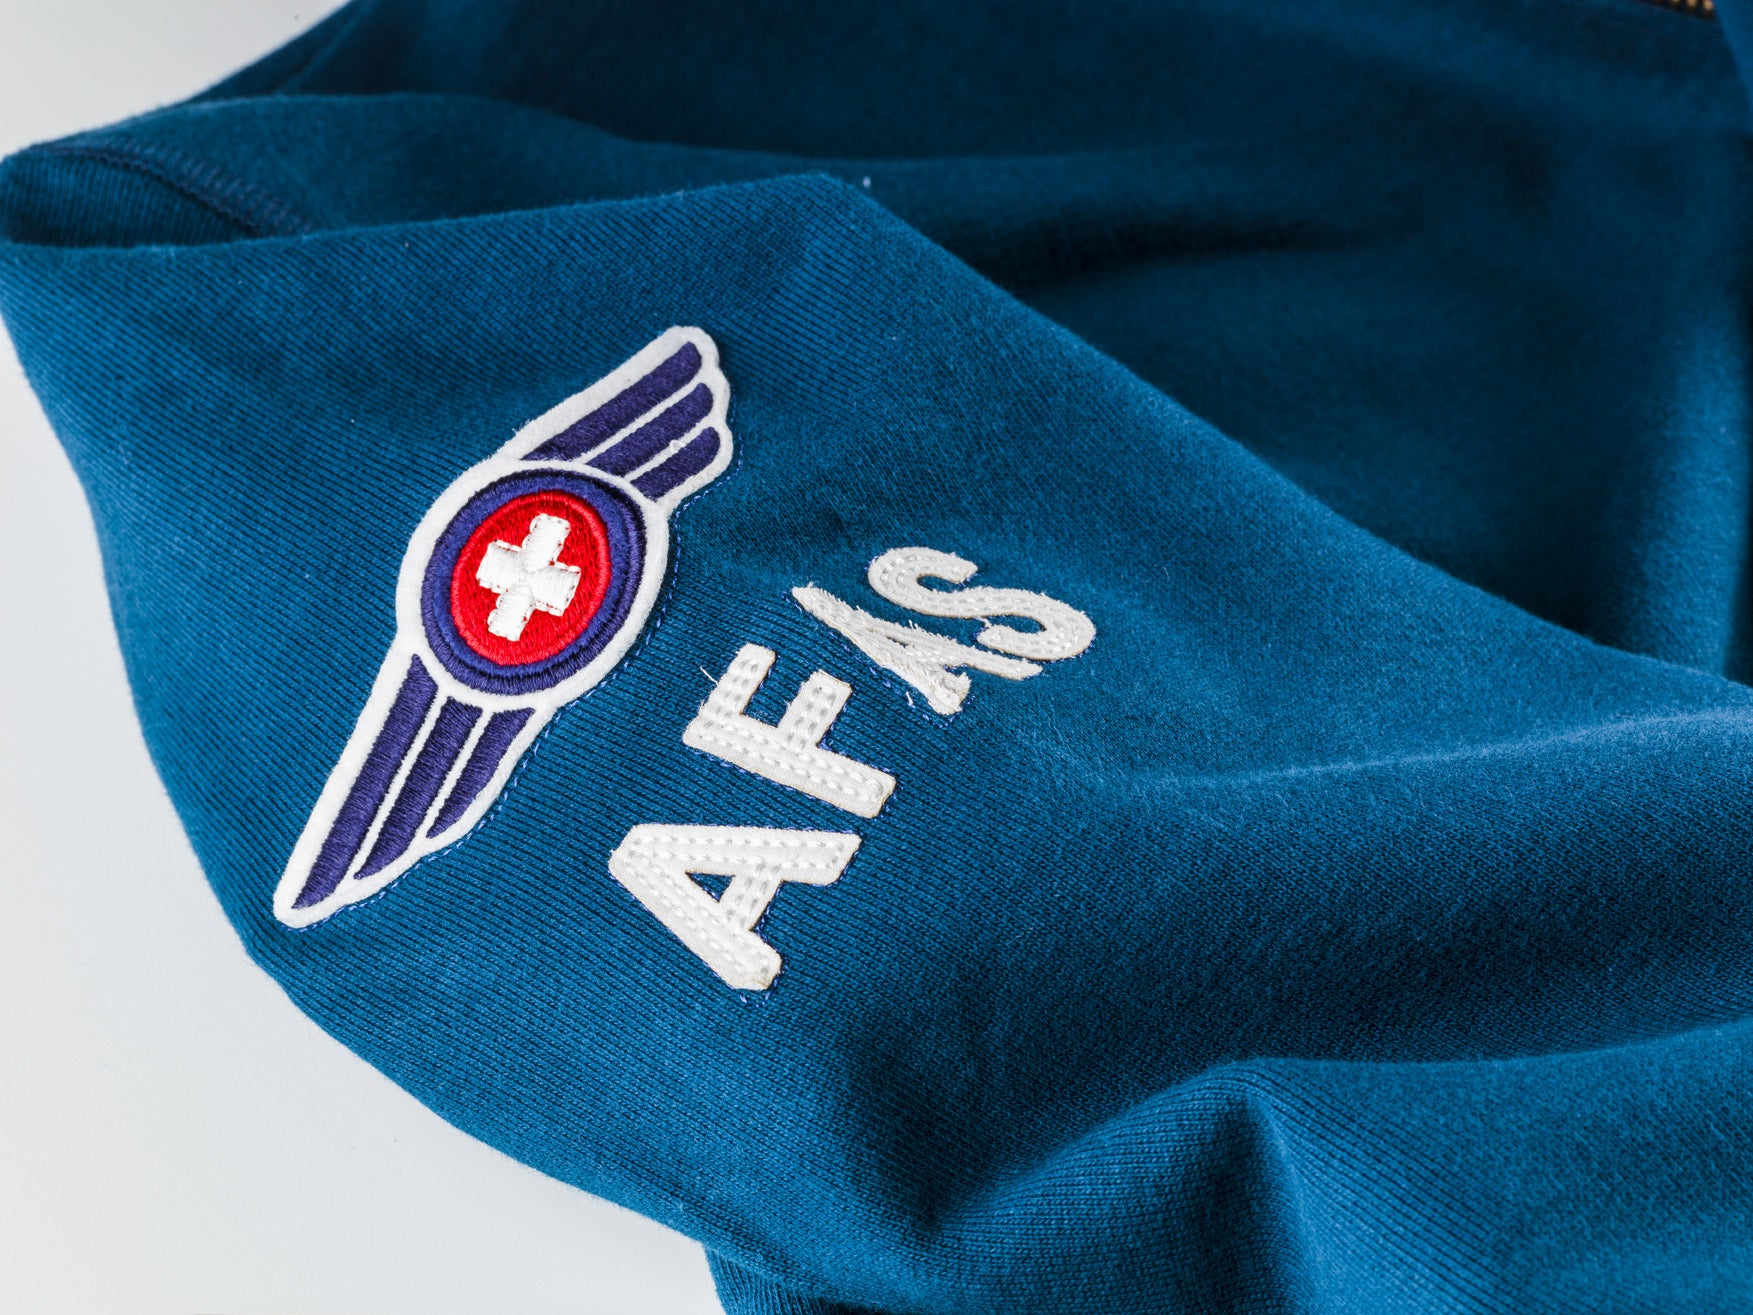 URBAN SWEATER AFAS Vintage Helmet Edition Blue Navy – Air Force Academy  Switzerland